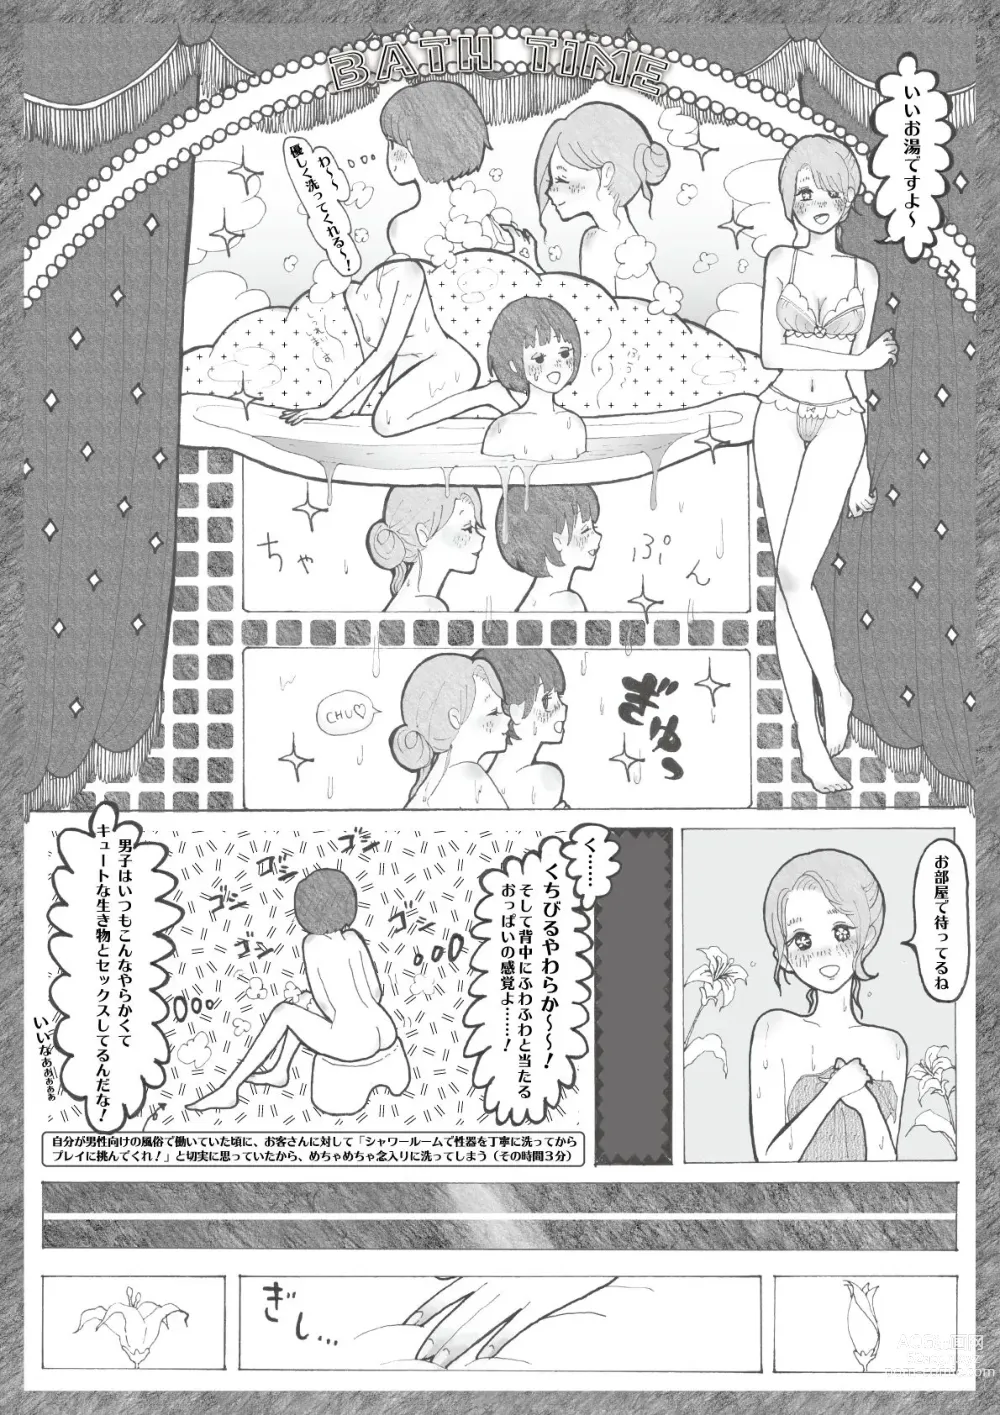 Page 3 of doujinshi Rukino ga Ima Wadai no Rezu Fuuzoku ni Ittemita